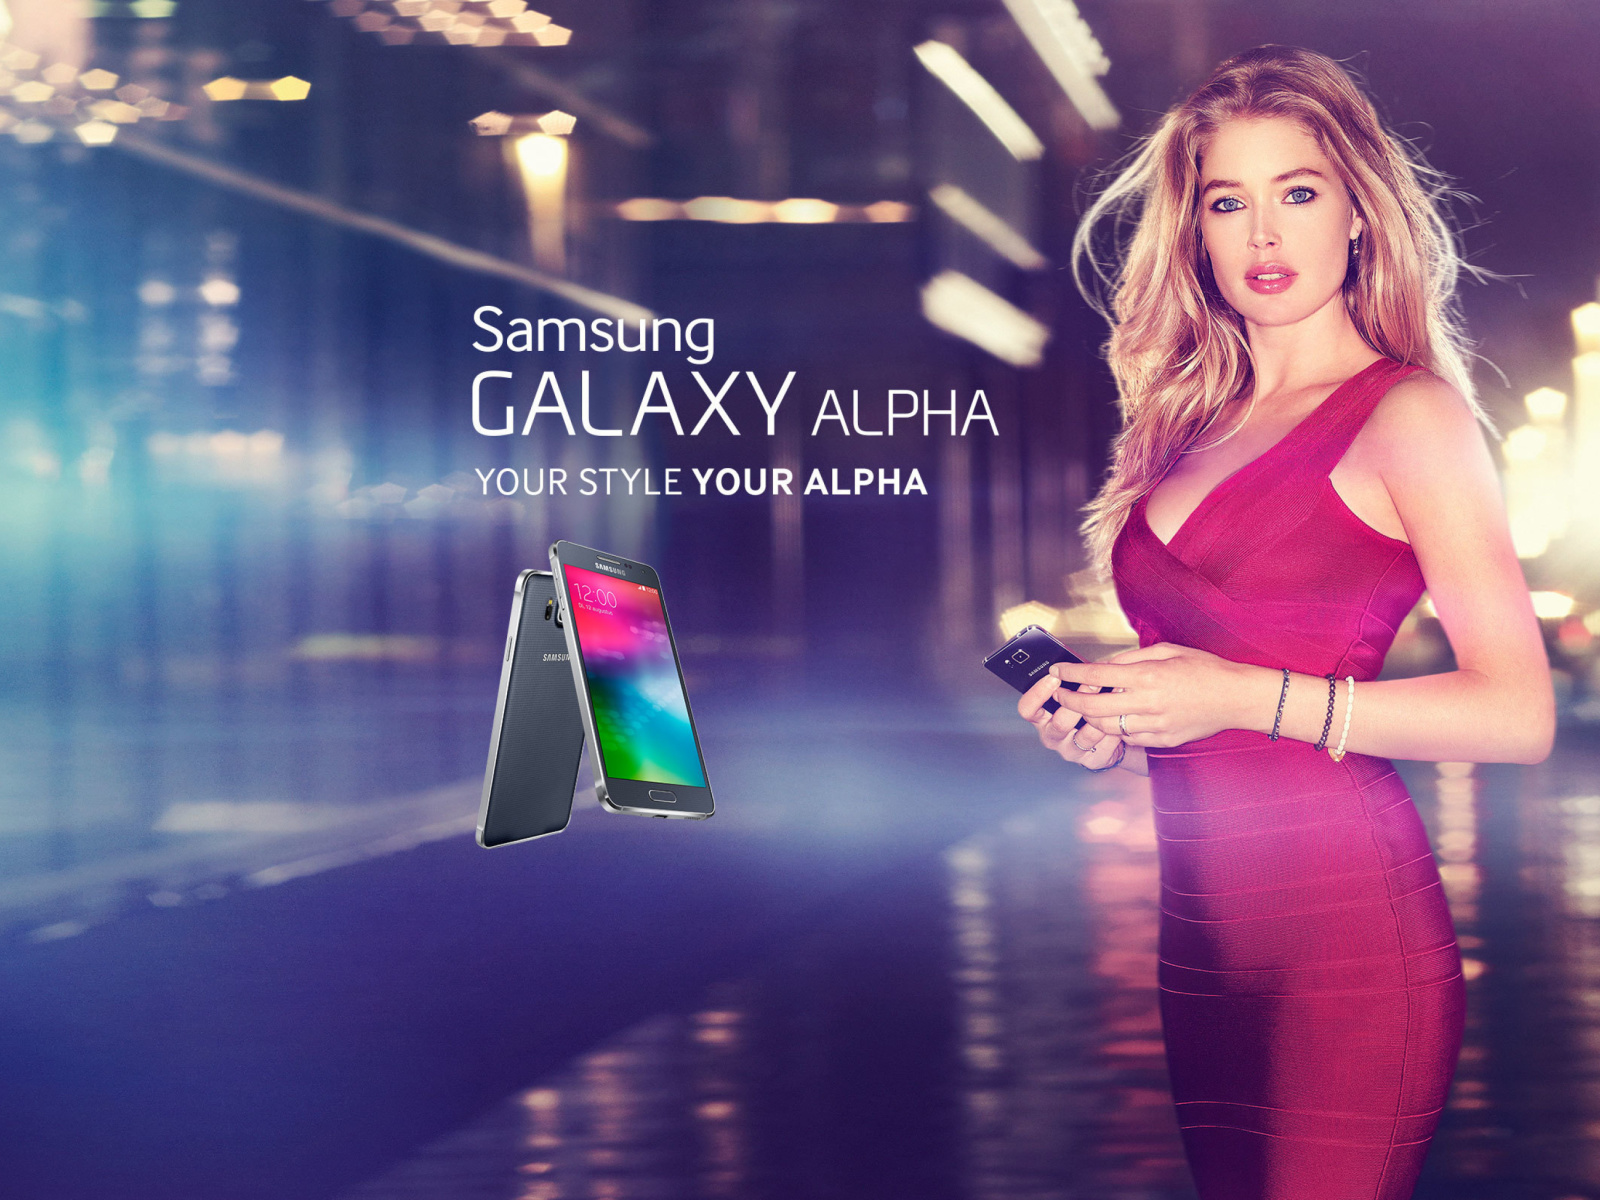 Das Samsung Galaxy Alpha Advertisement with Doutzen Kroes Wallpaper 1600x1200